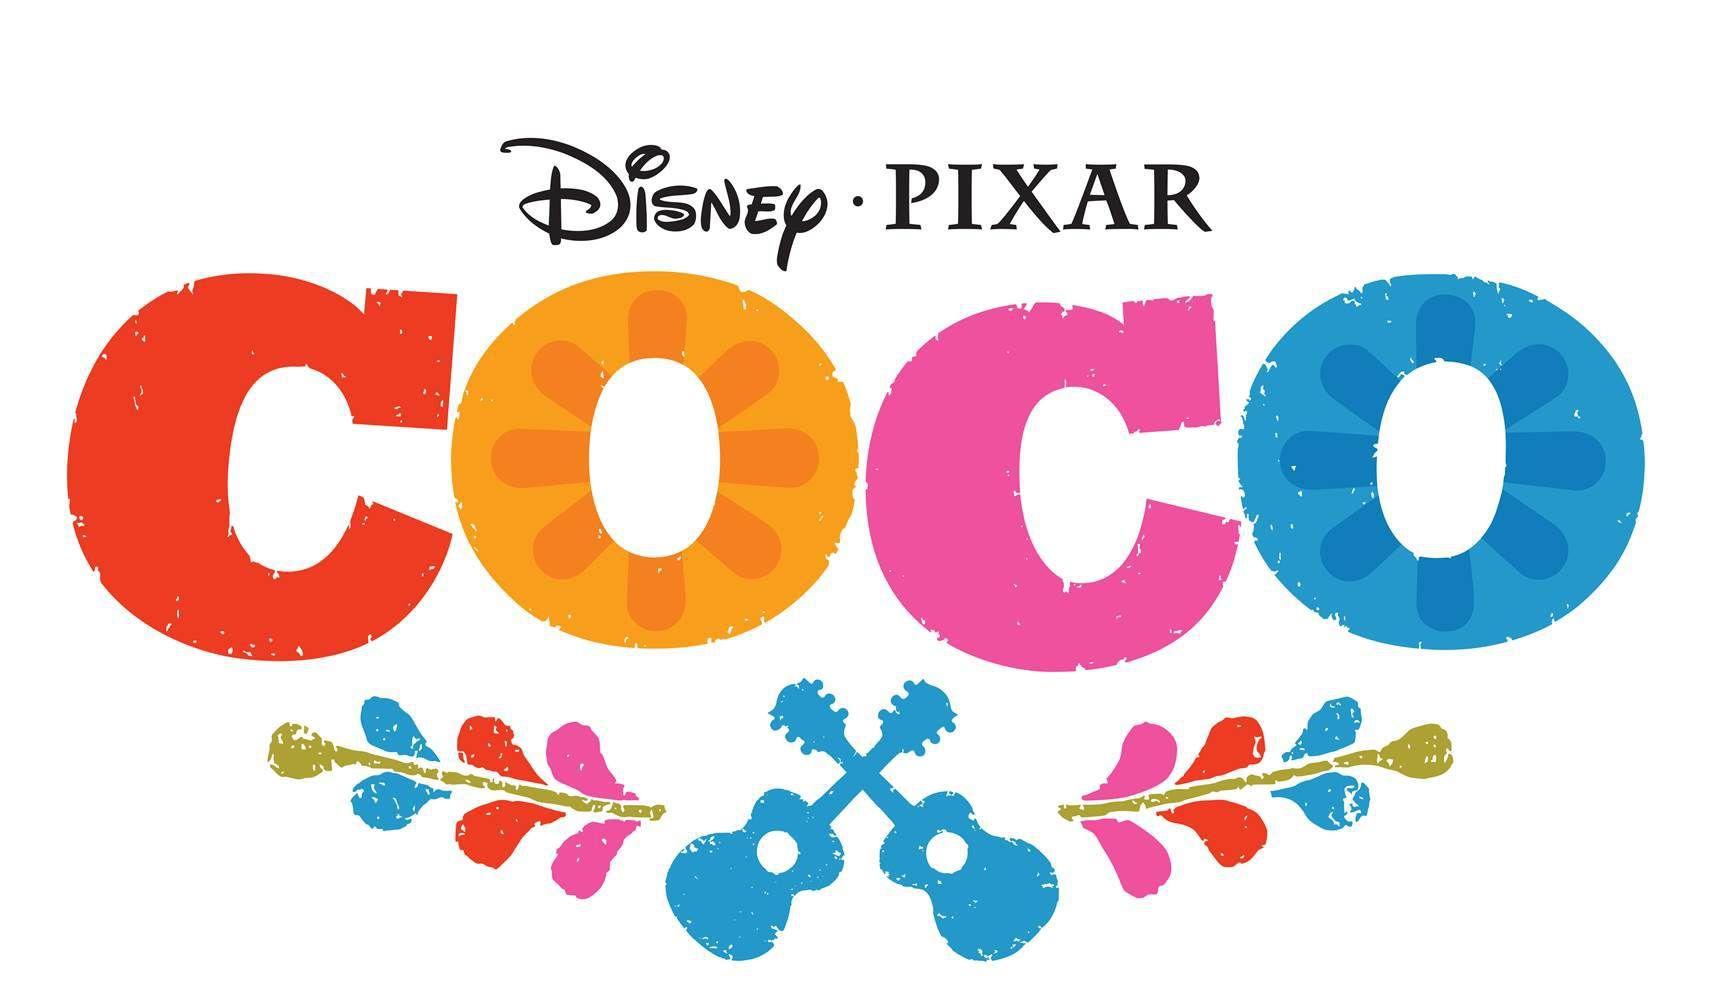 Pixar Movie Logo - Coco Pixar Movie Logo | Movie Night - Coco | Pinterest | Disney ...